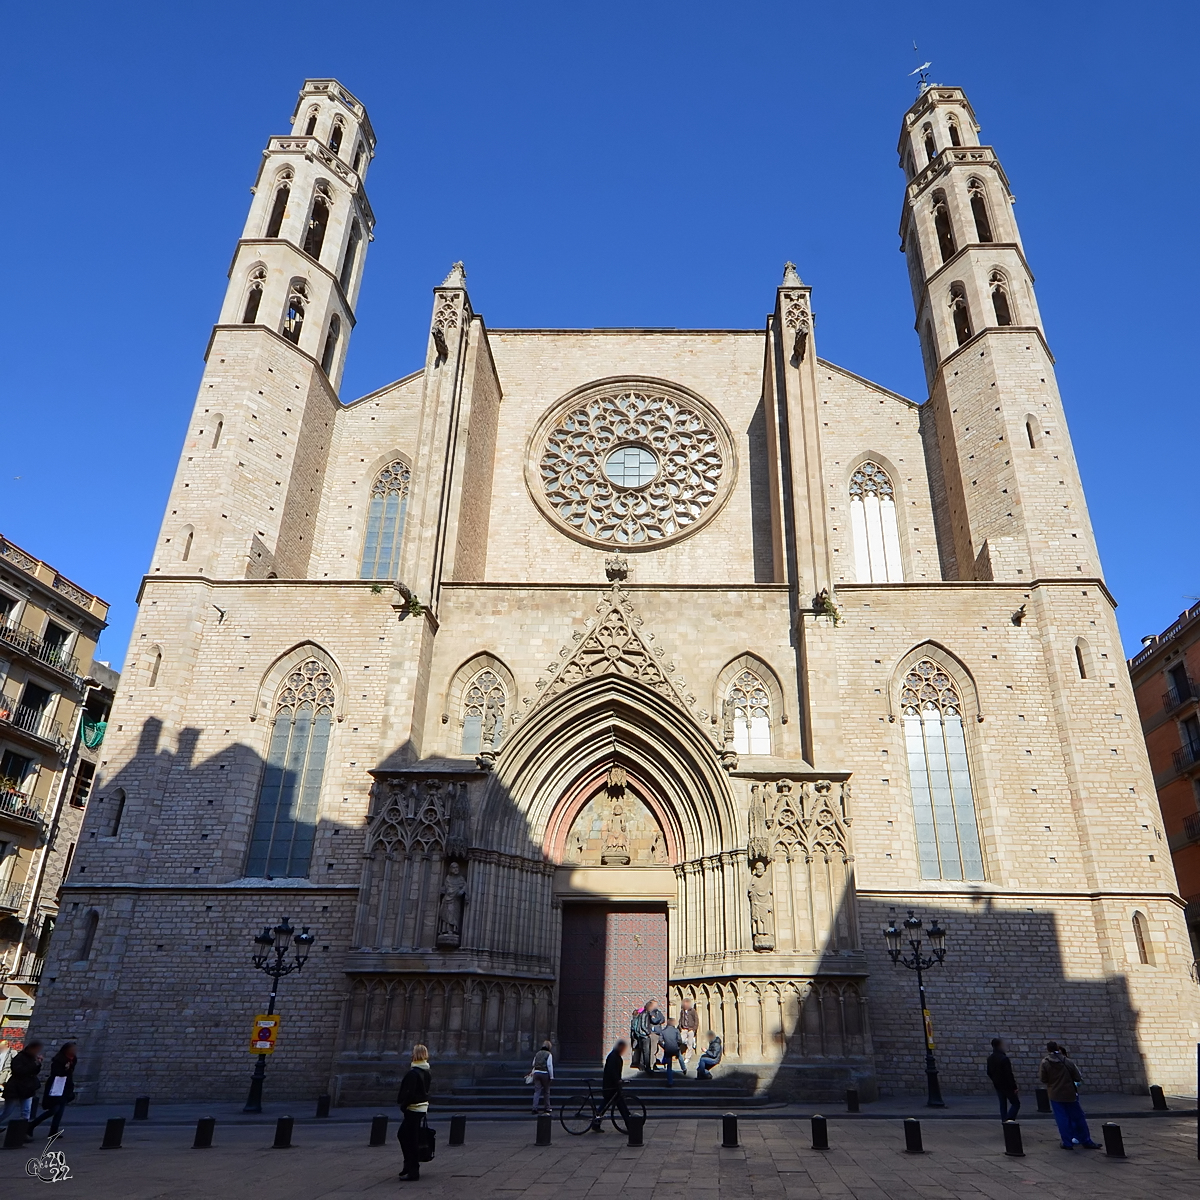 Die Catedral Santa Maria del Mar ist eine zwischen 1329 und 1383 gebaute gotische Kirche in Barcelona. (Februar 2012)